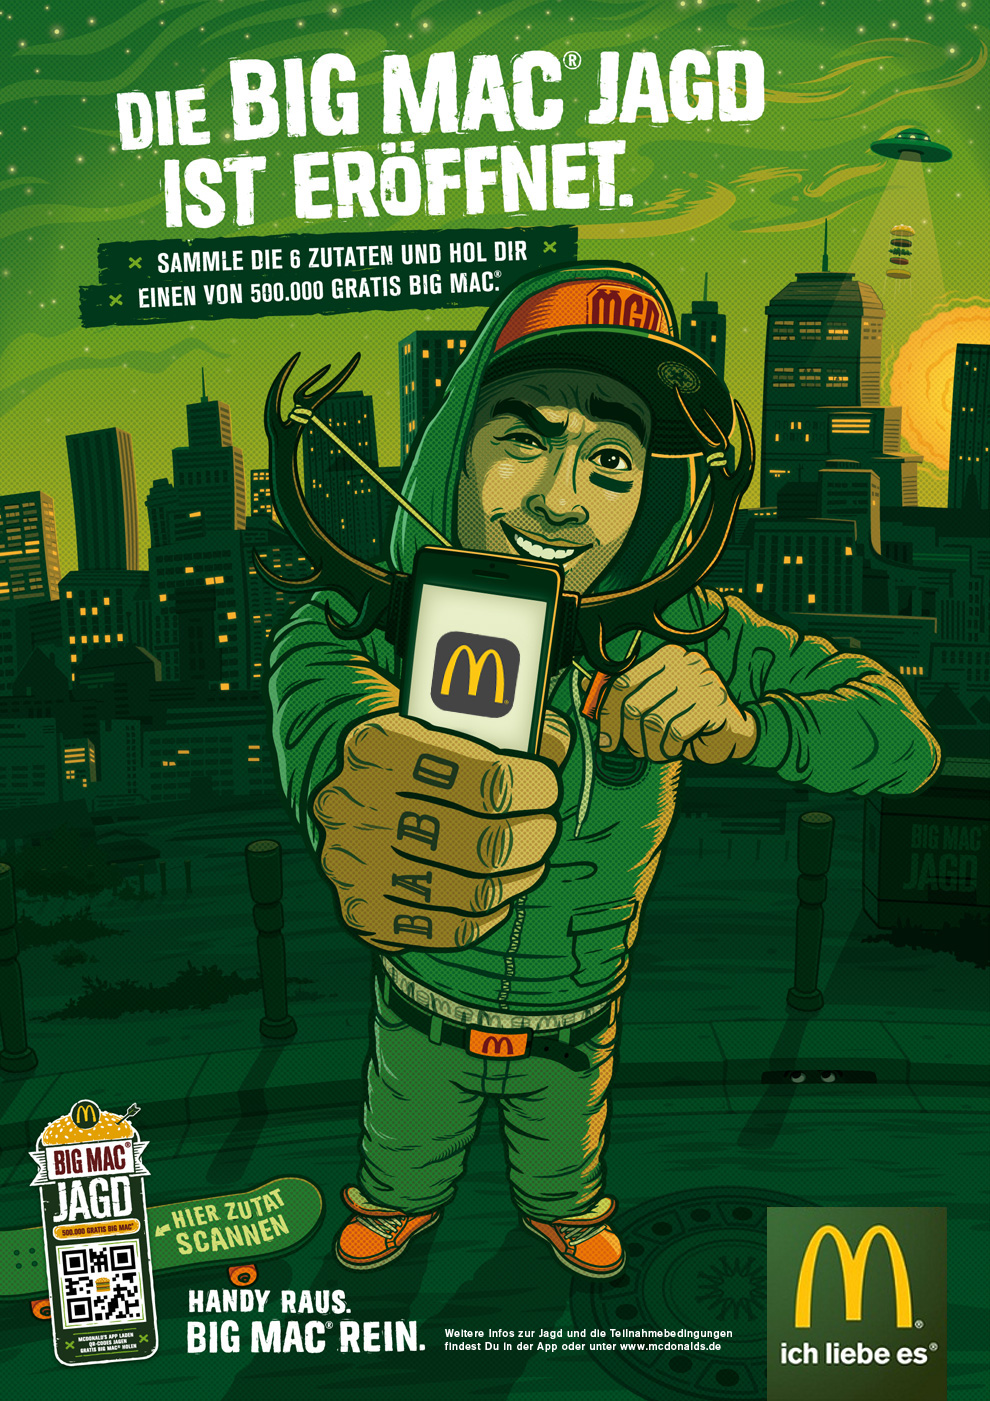 mcdonald's big mac burger Fast food hunter QR Code Mobile app characters sketch pencil interactive cartoon